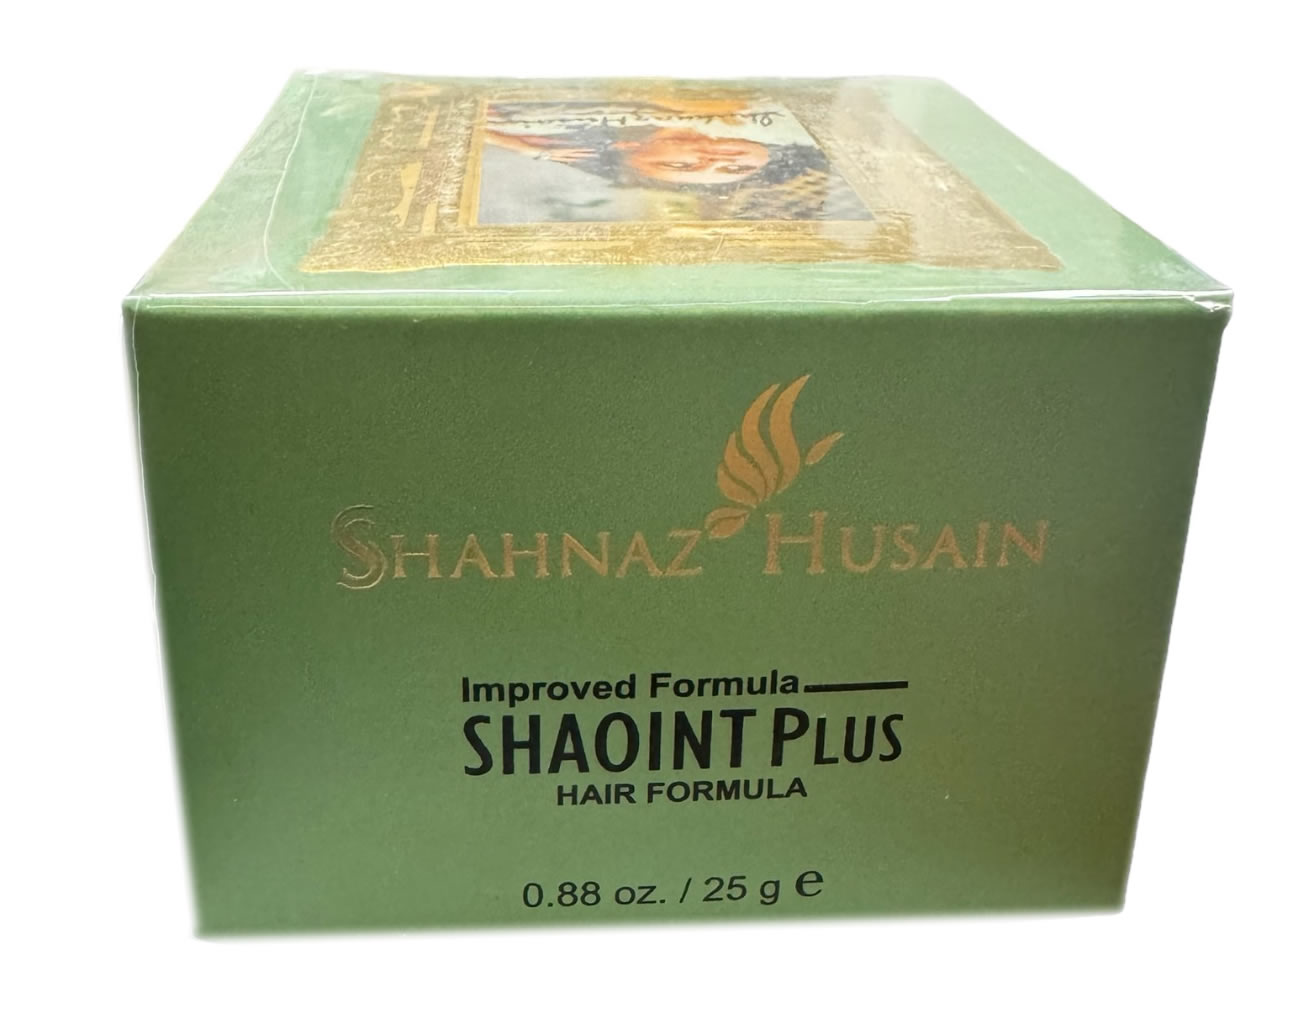 Shahnaz Husain Shaoint Hair Formula